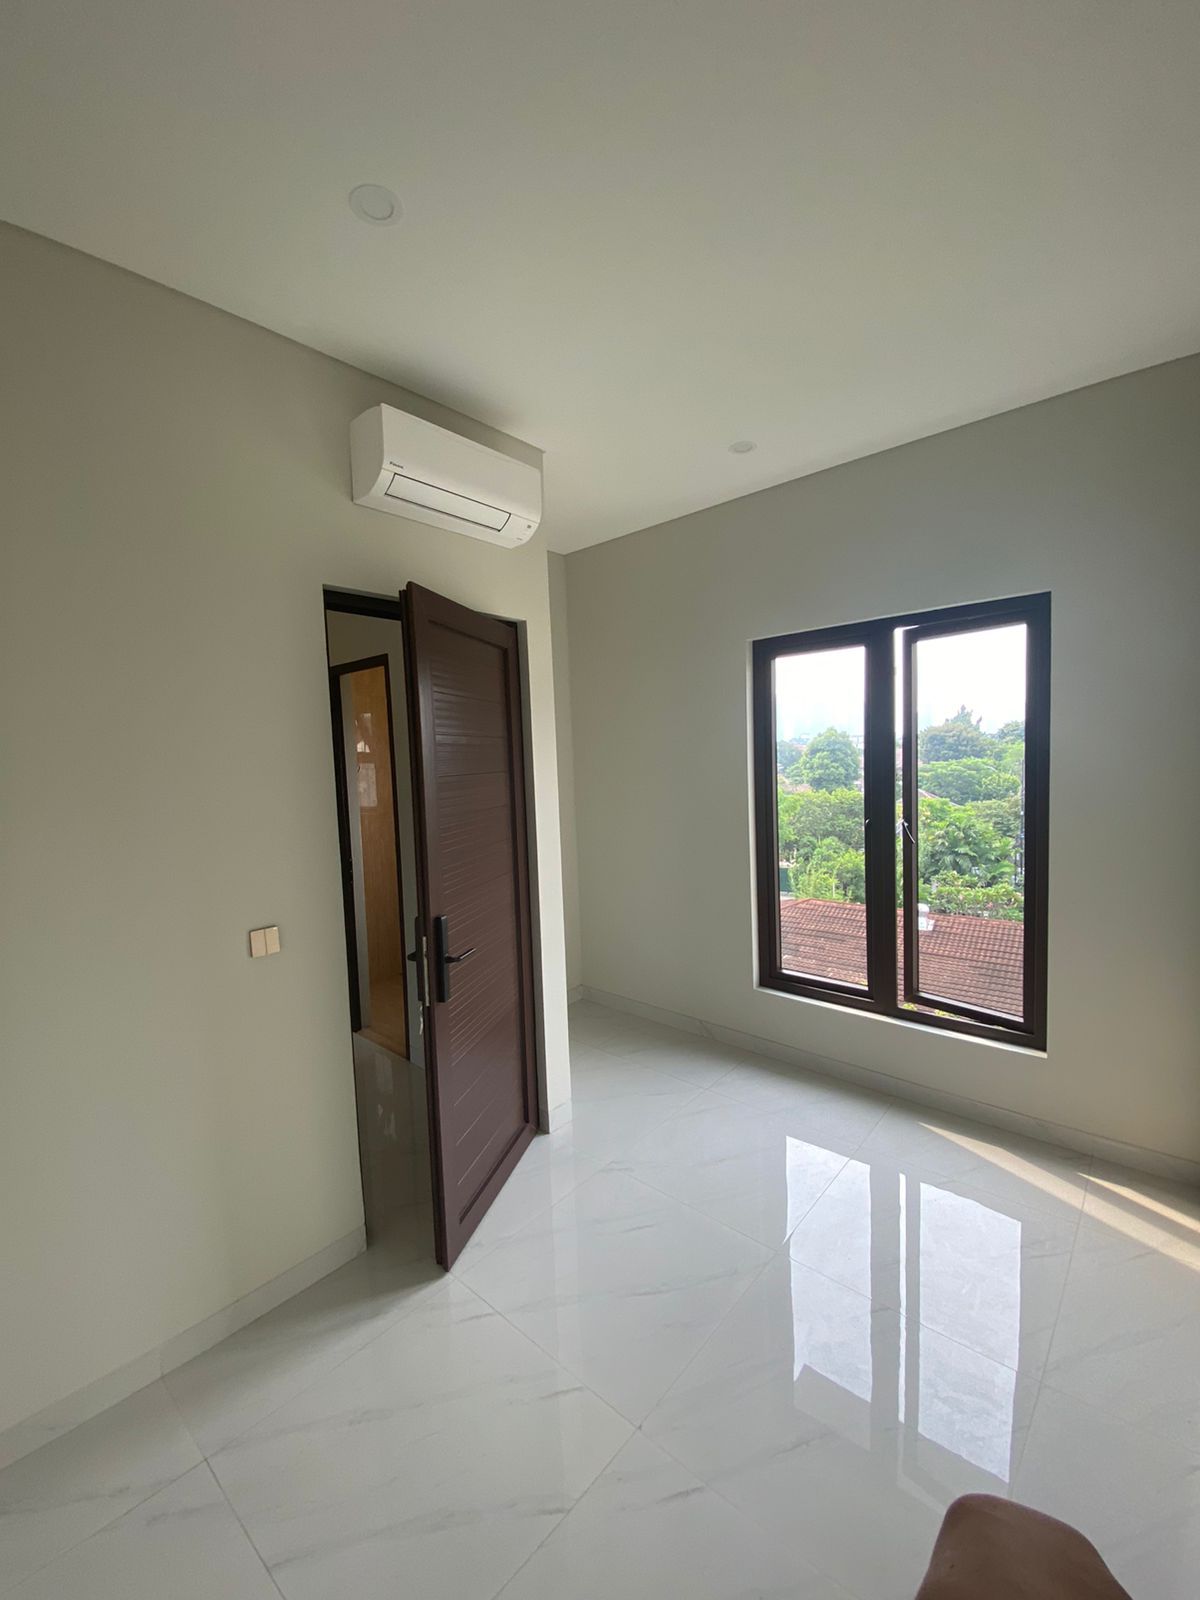 Jual Rumah Baru Di Jakarta Selatan